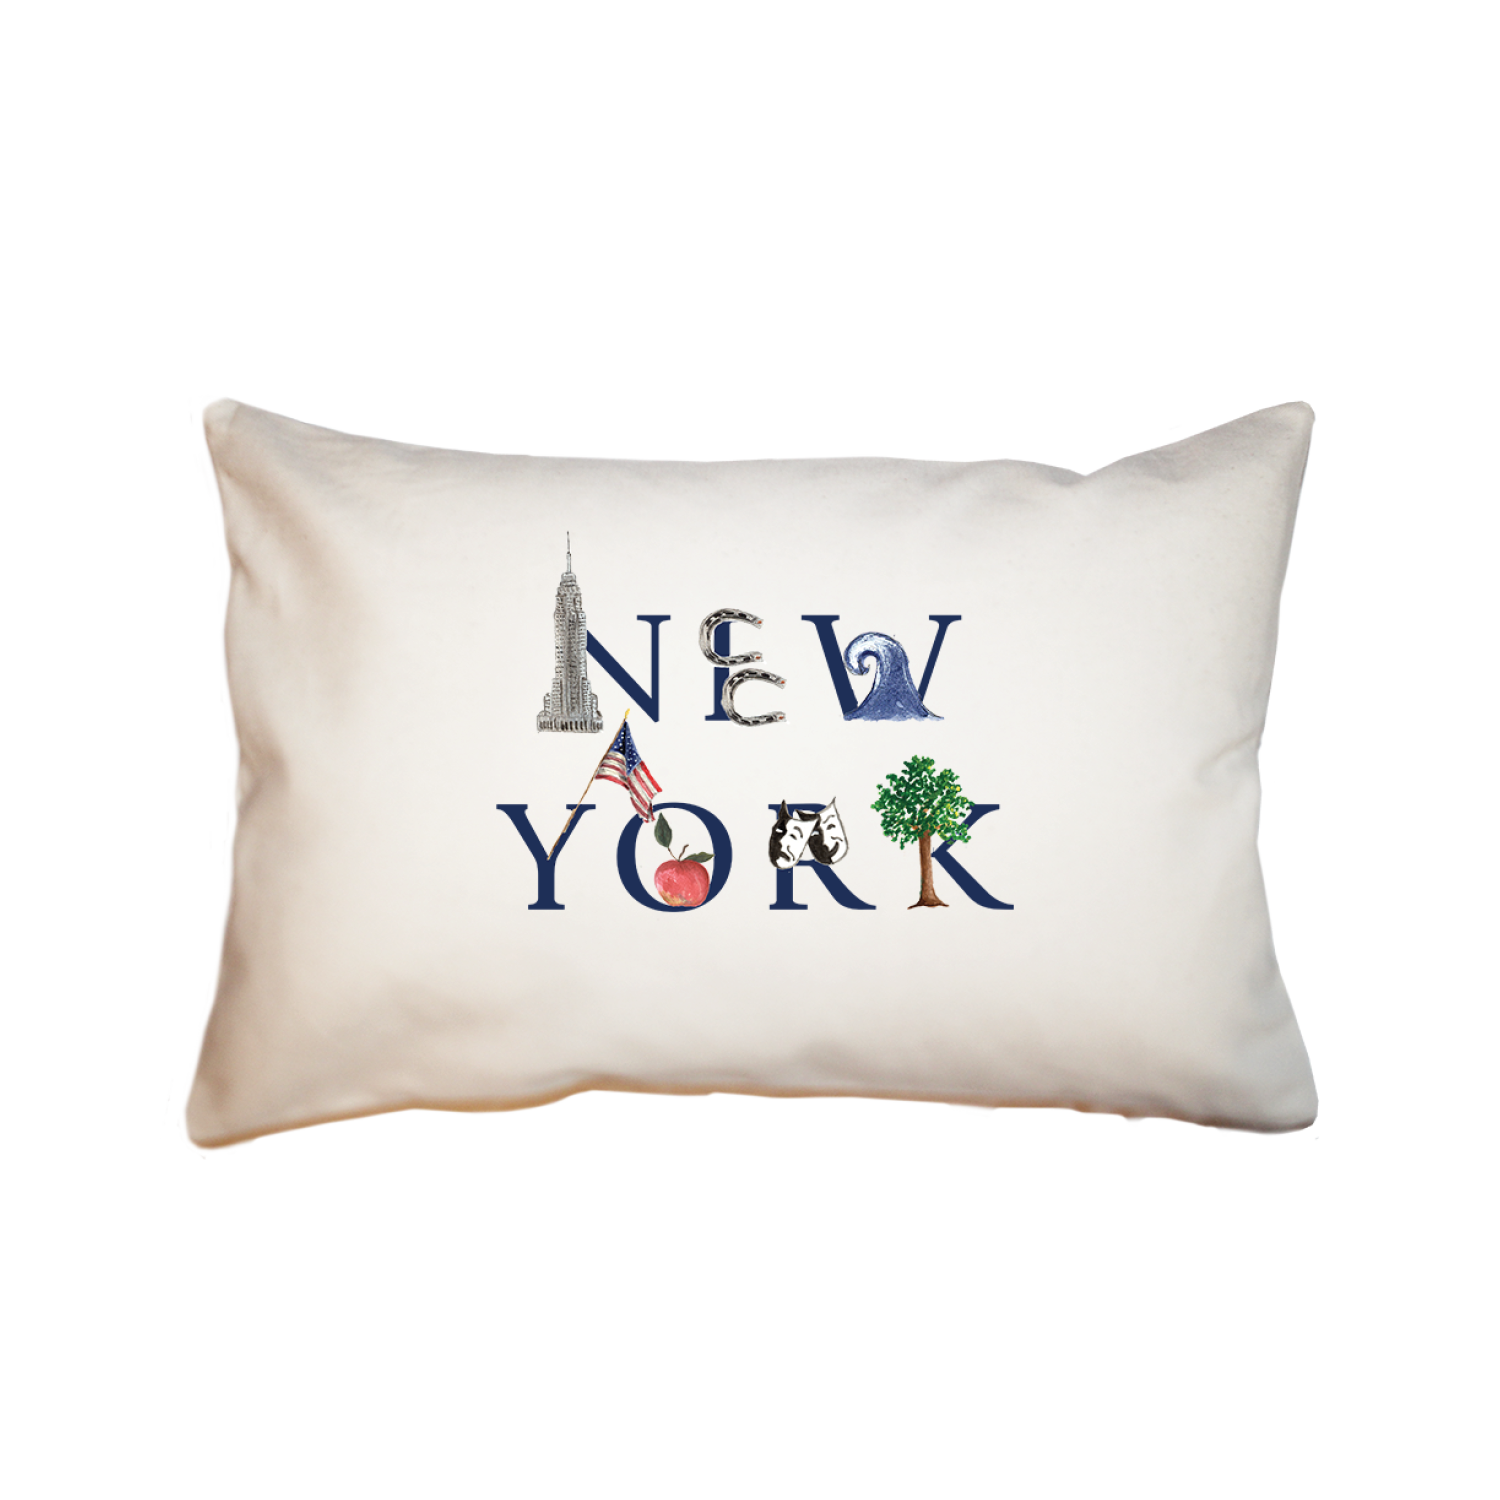 New York large rectangle pillow